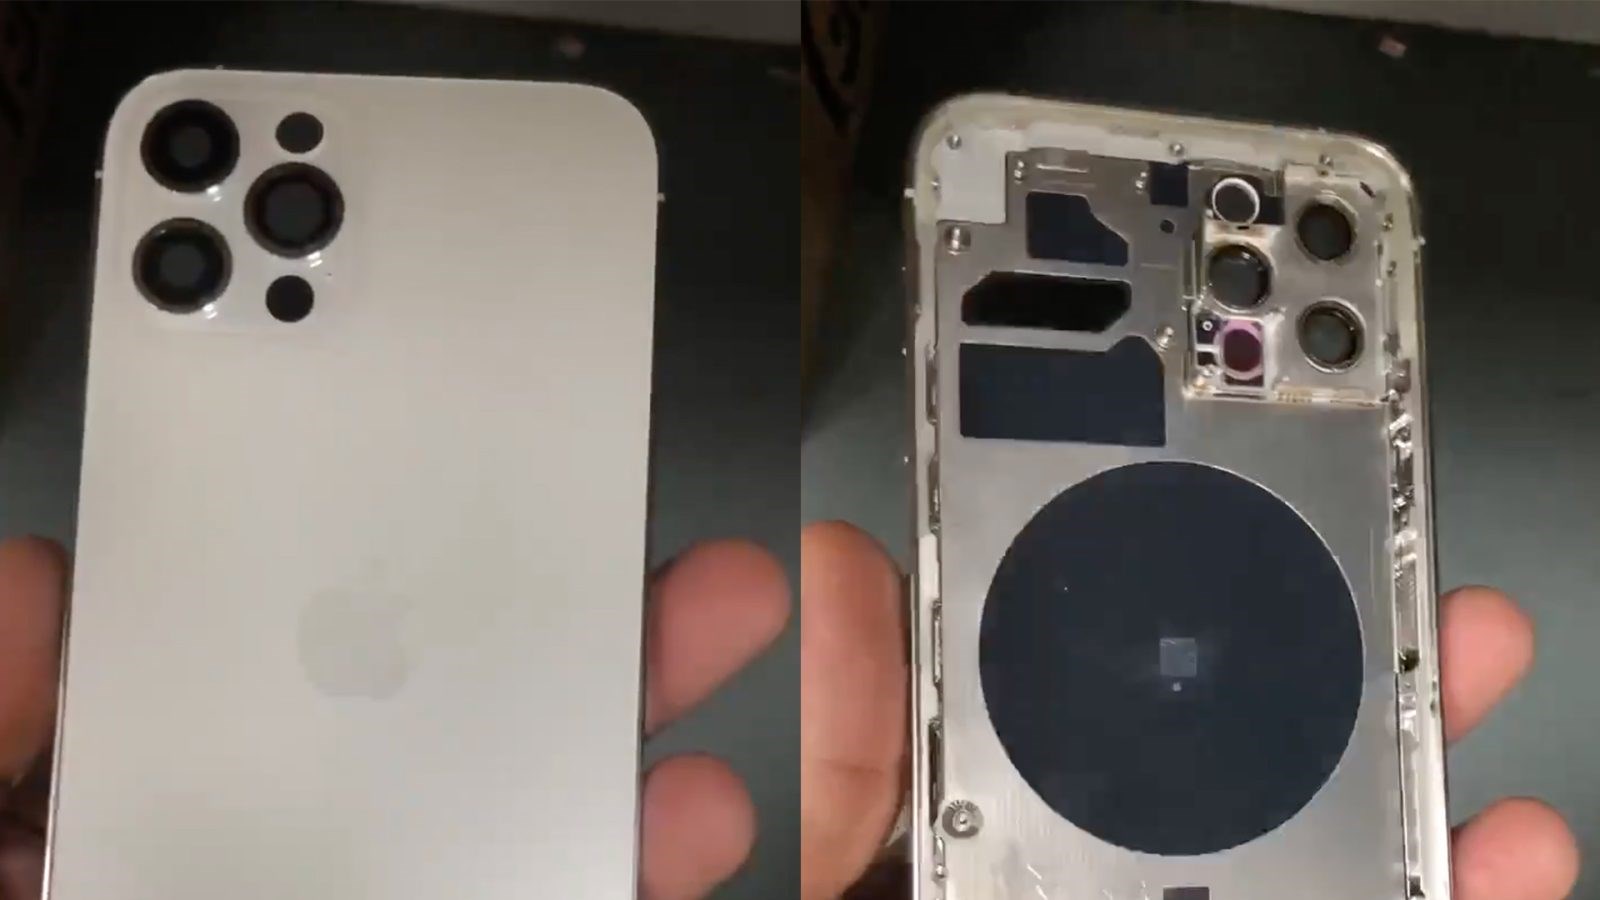 Lidar tarayıcılı iPhone 12 Pro'nun metal çerçeveye sahip kasası görüntülendi [video]